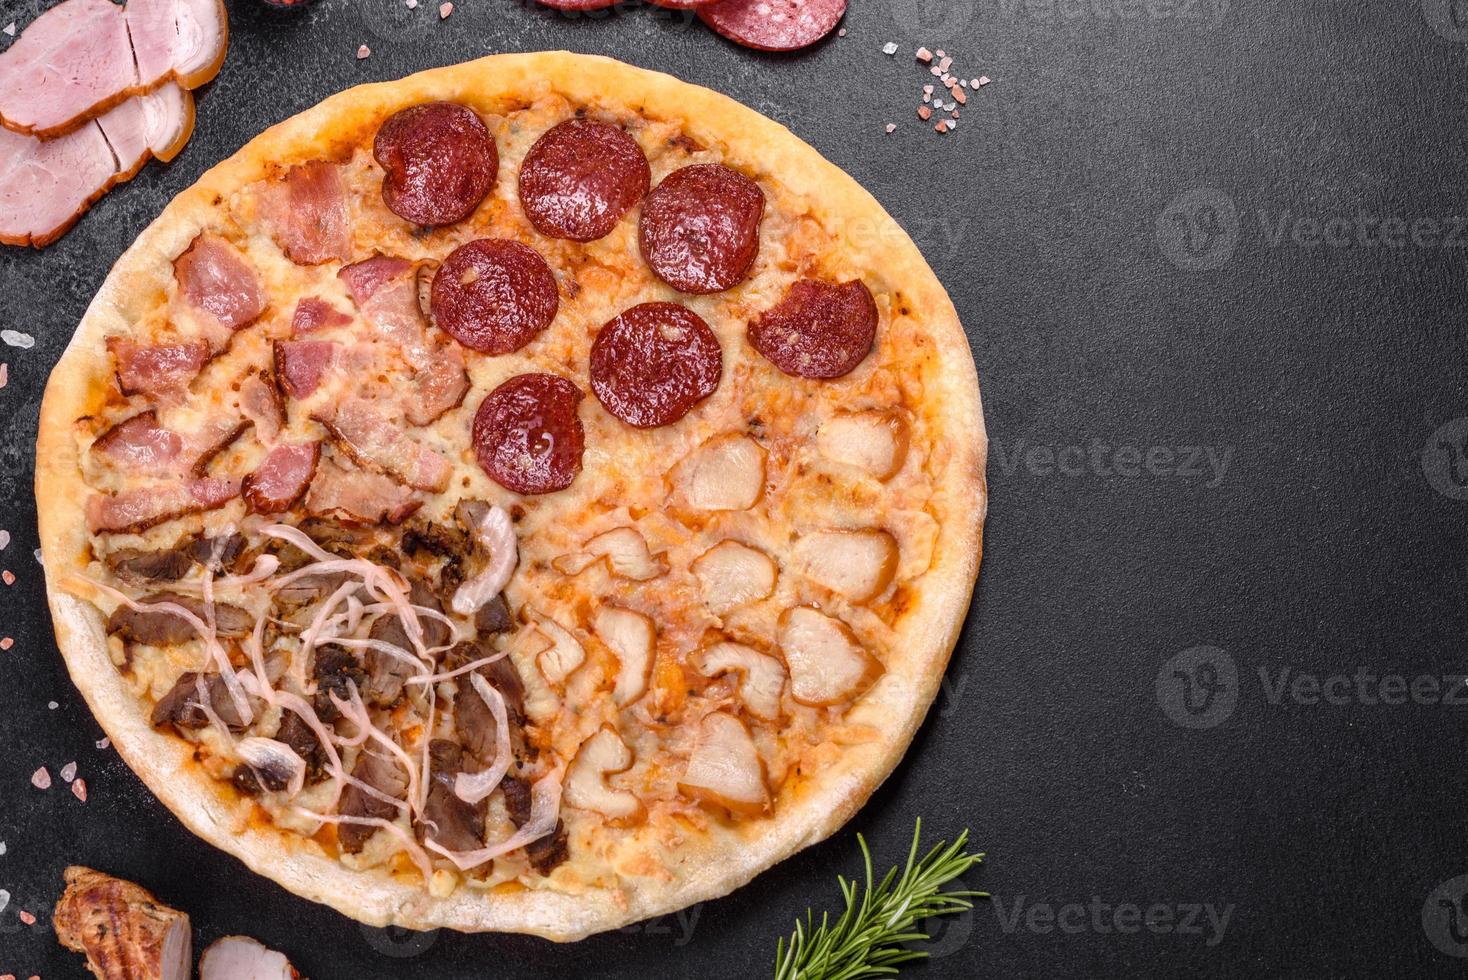 deliciosa pizza fresca hecha en un horno de hogar con cuatro tipos de carne y salchicha foto